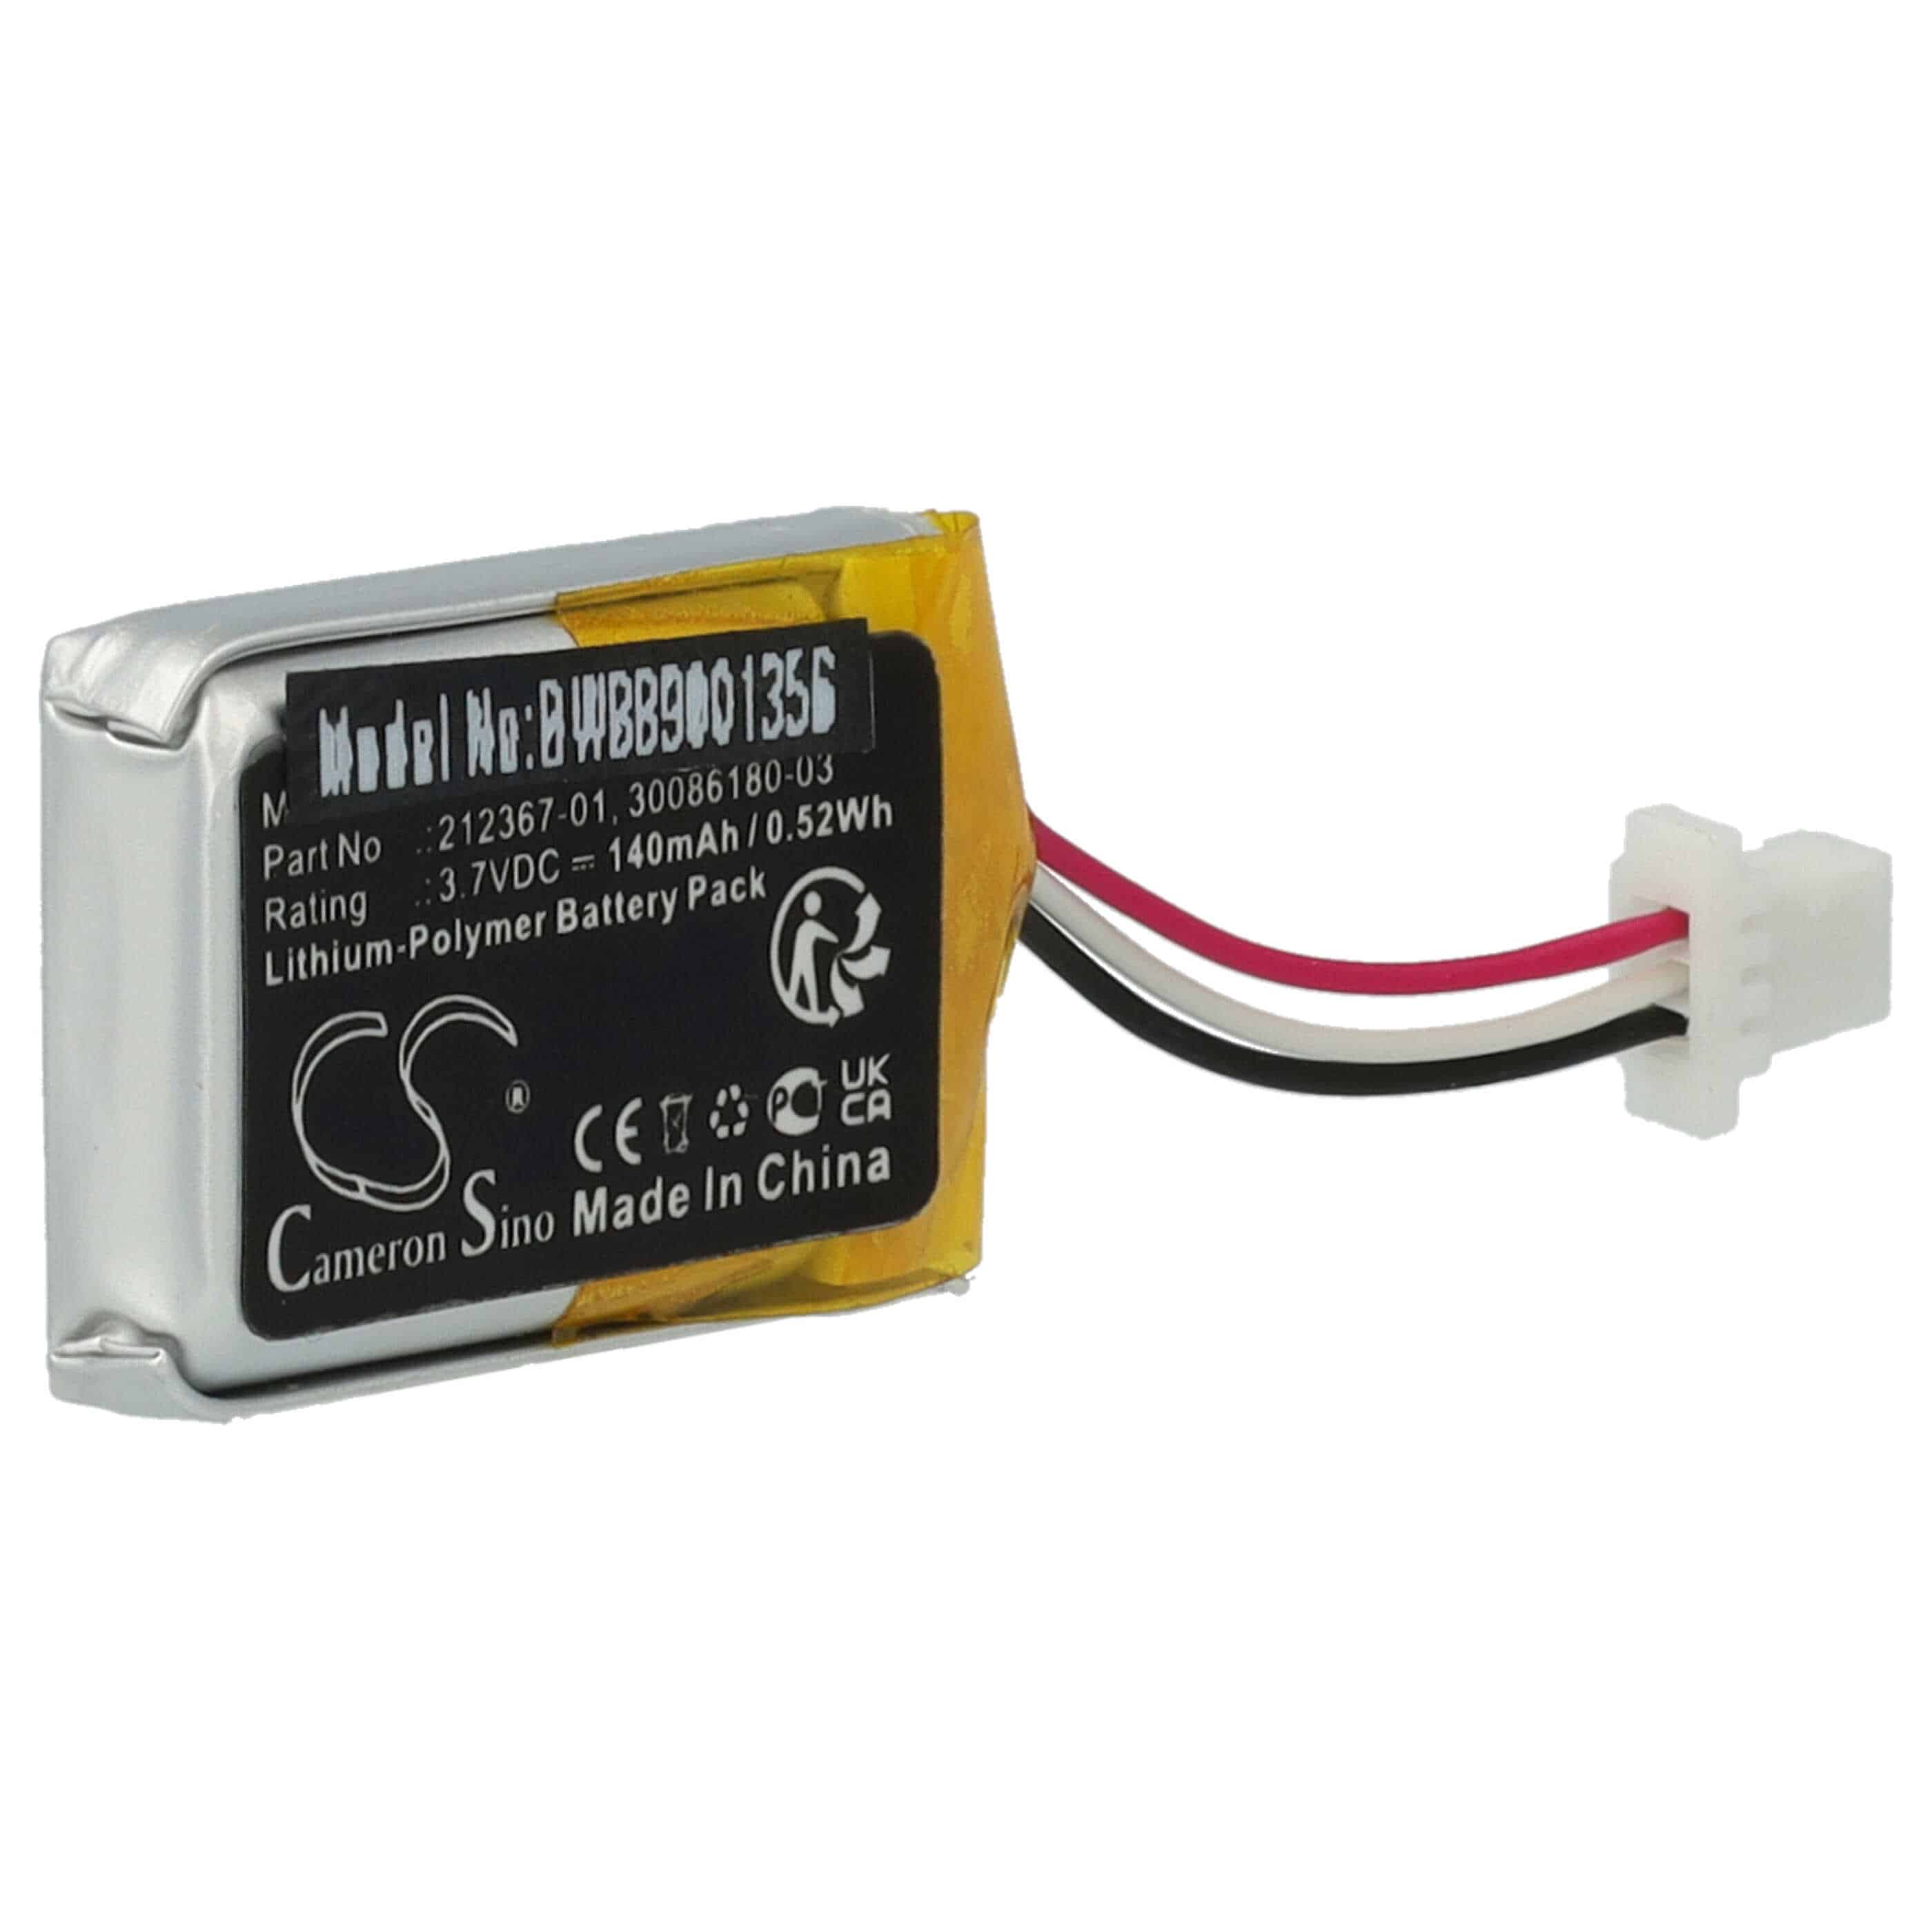 Batterie remplace Plantronics 212367-01 (3 pin), 212367-01 pour casque audio - 140mAh 3,7V Li-polymère